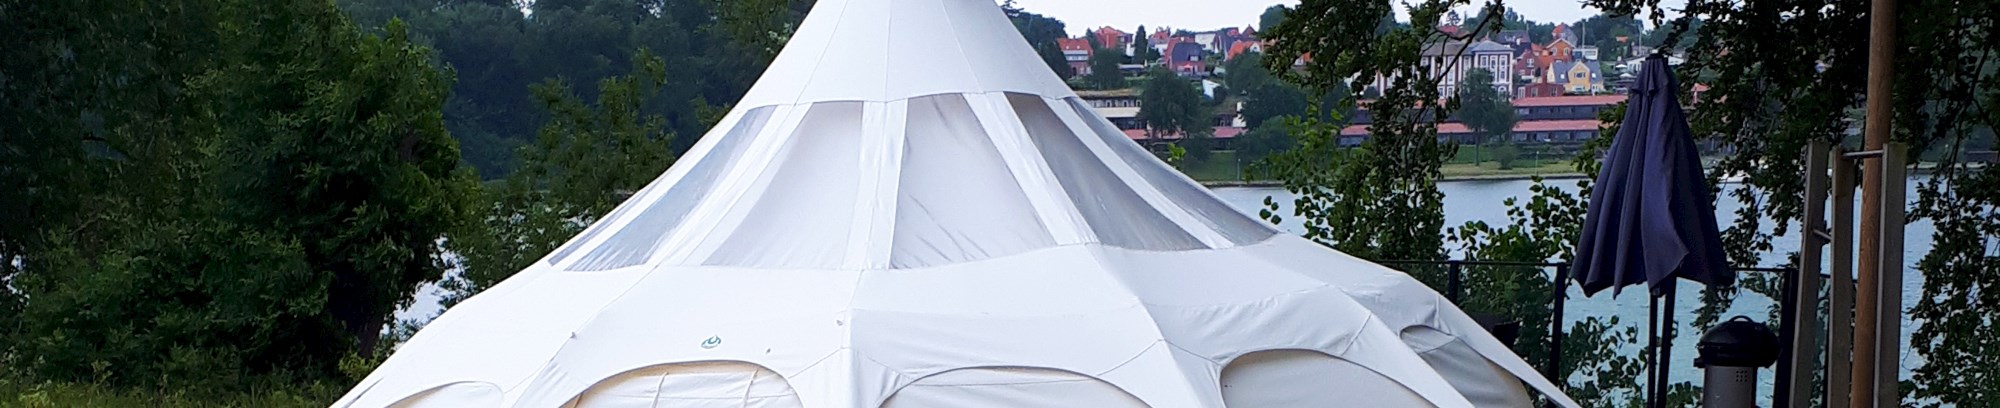 Kursus i afspænding og meditation i glamping telt med FOF Nordsjælland